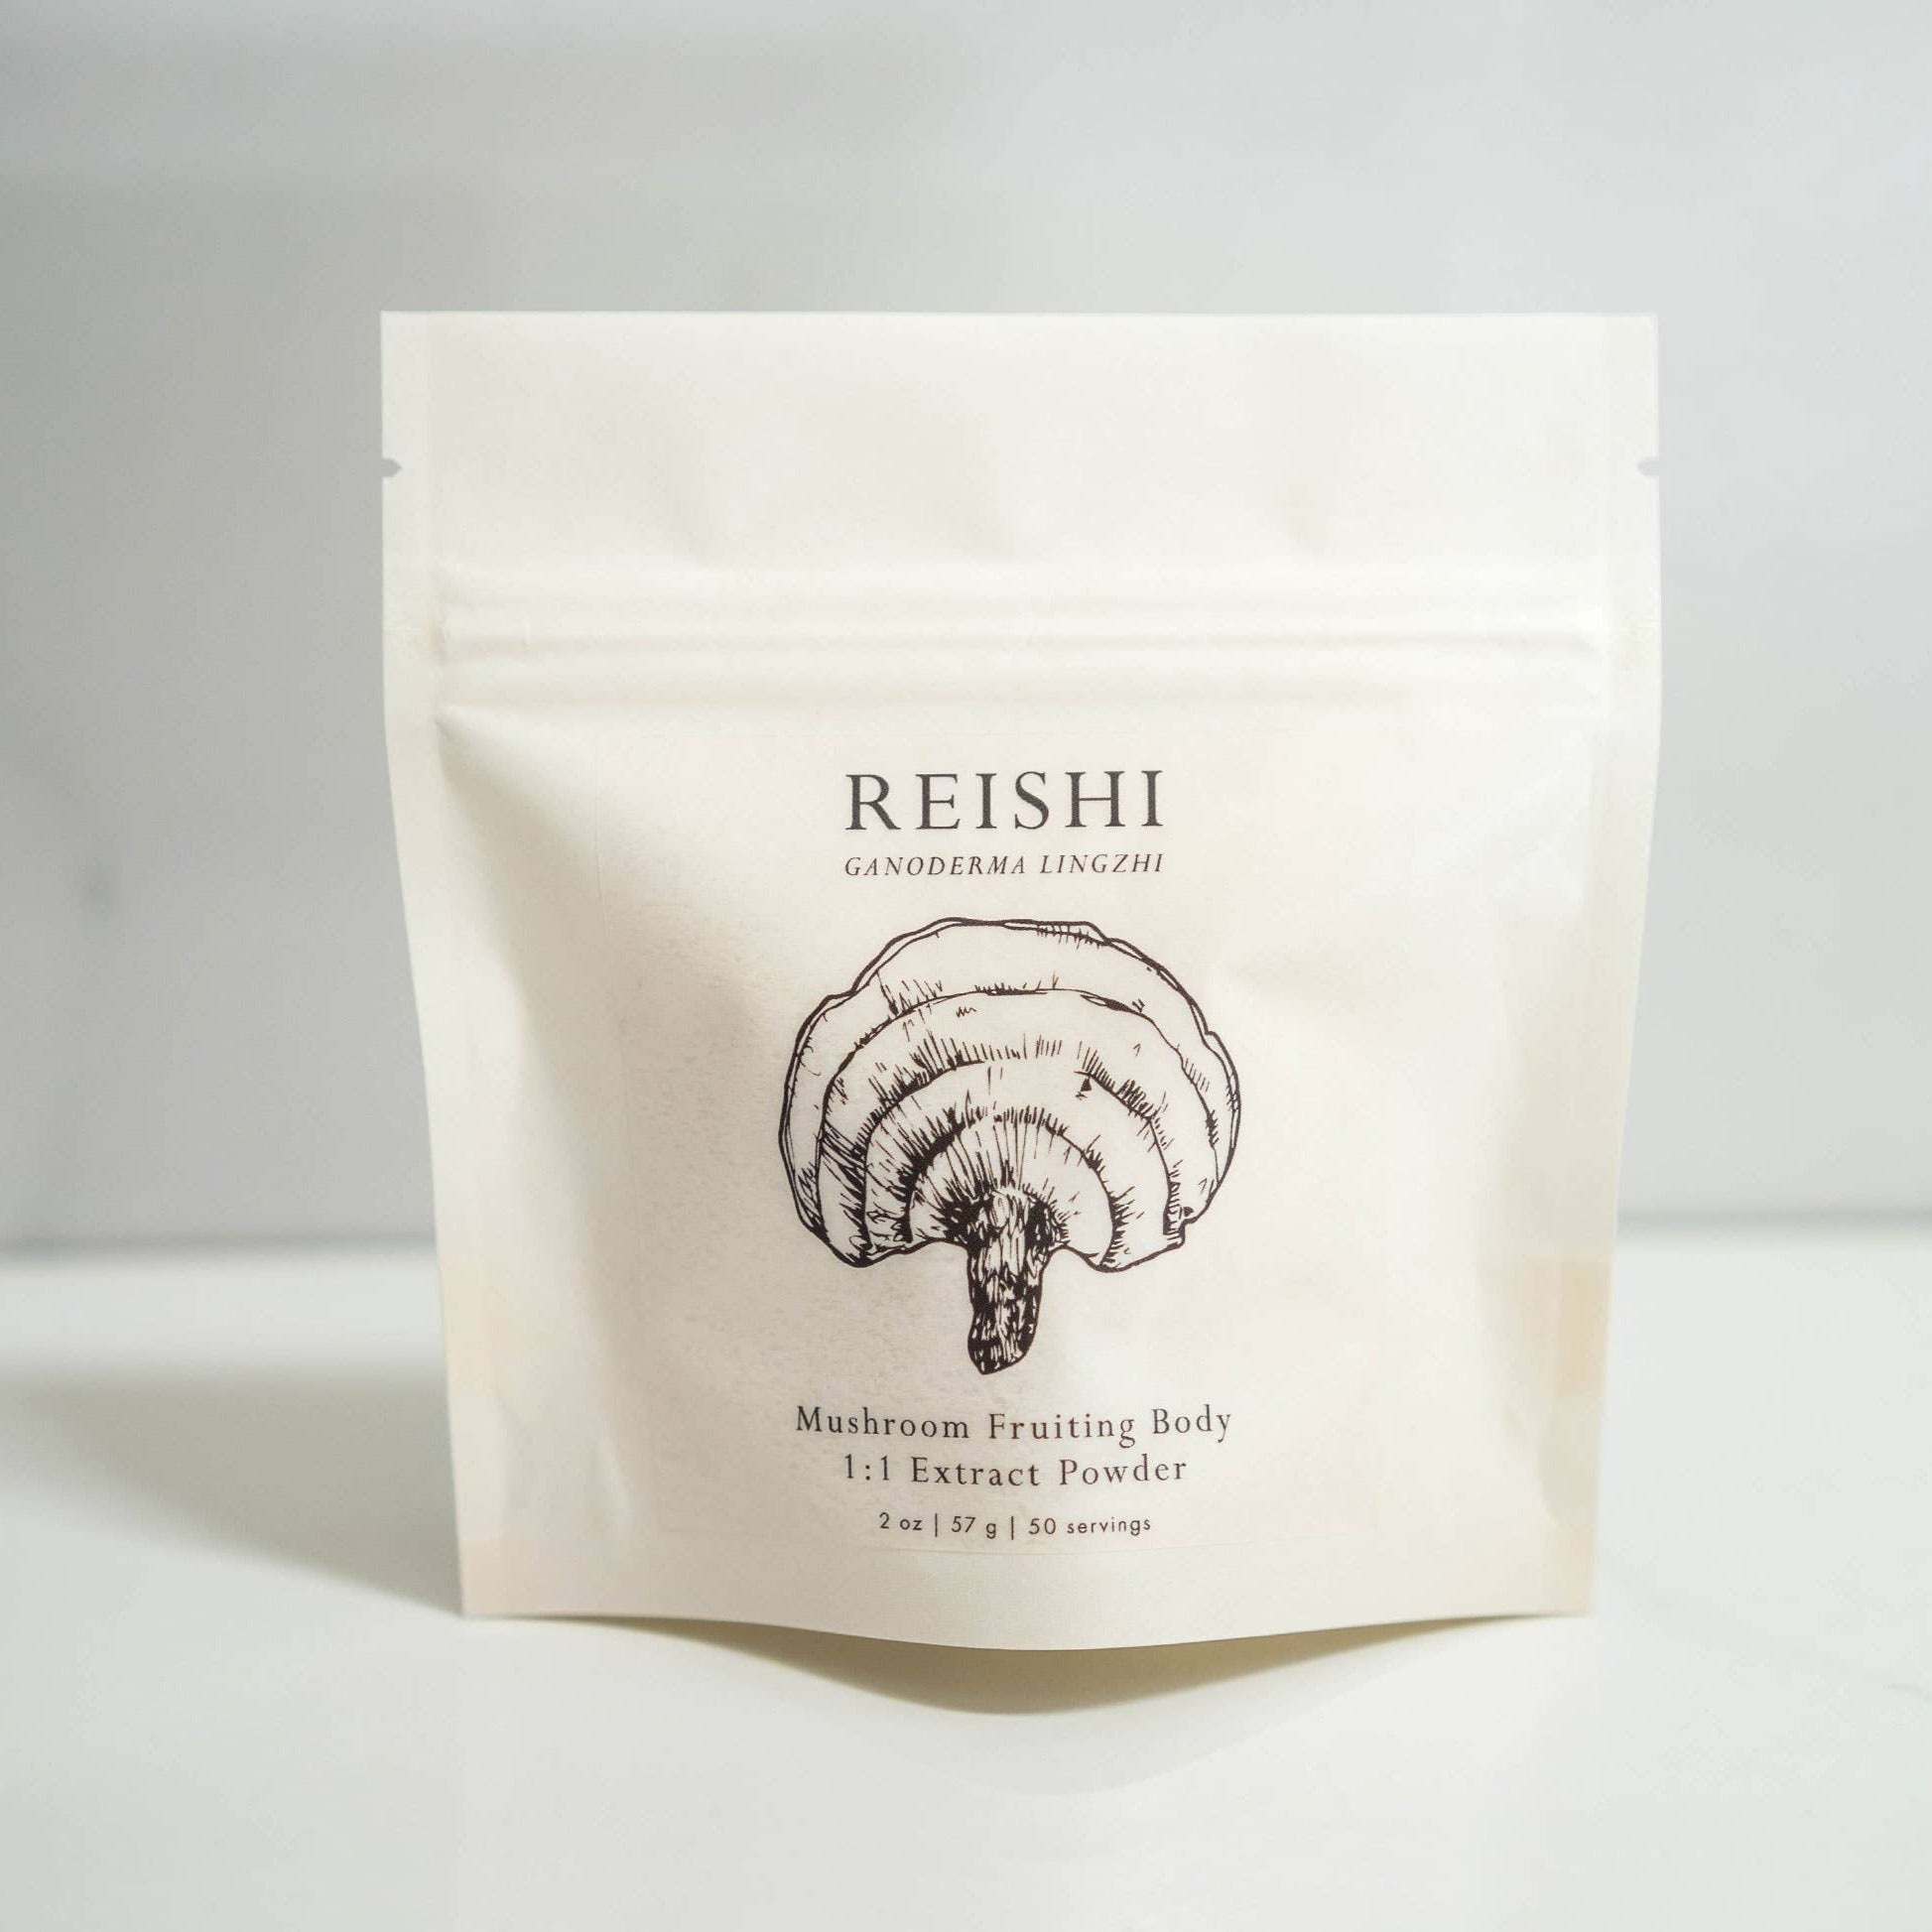 illustration of reishi mushroom on bag of powdered mushroom